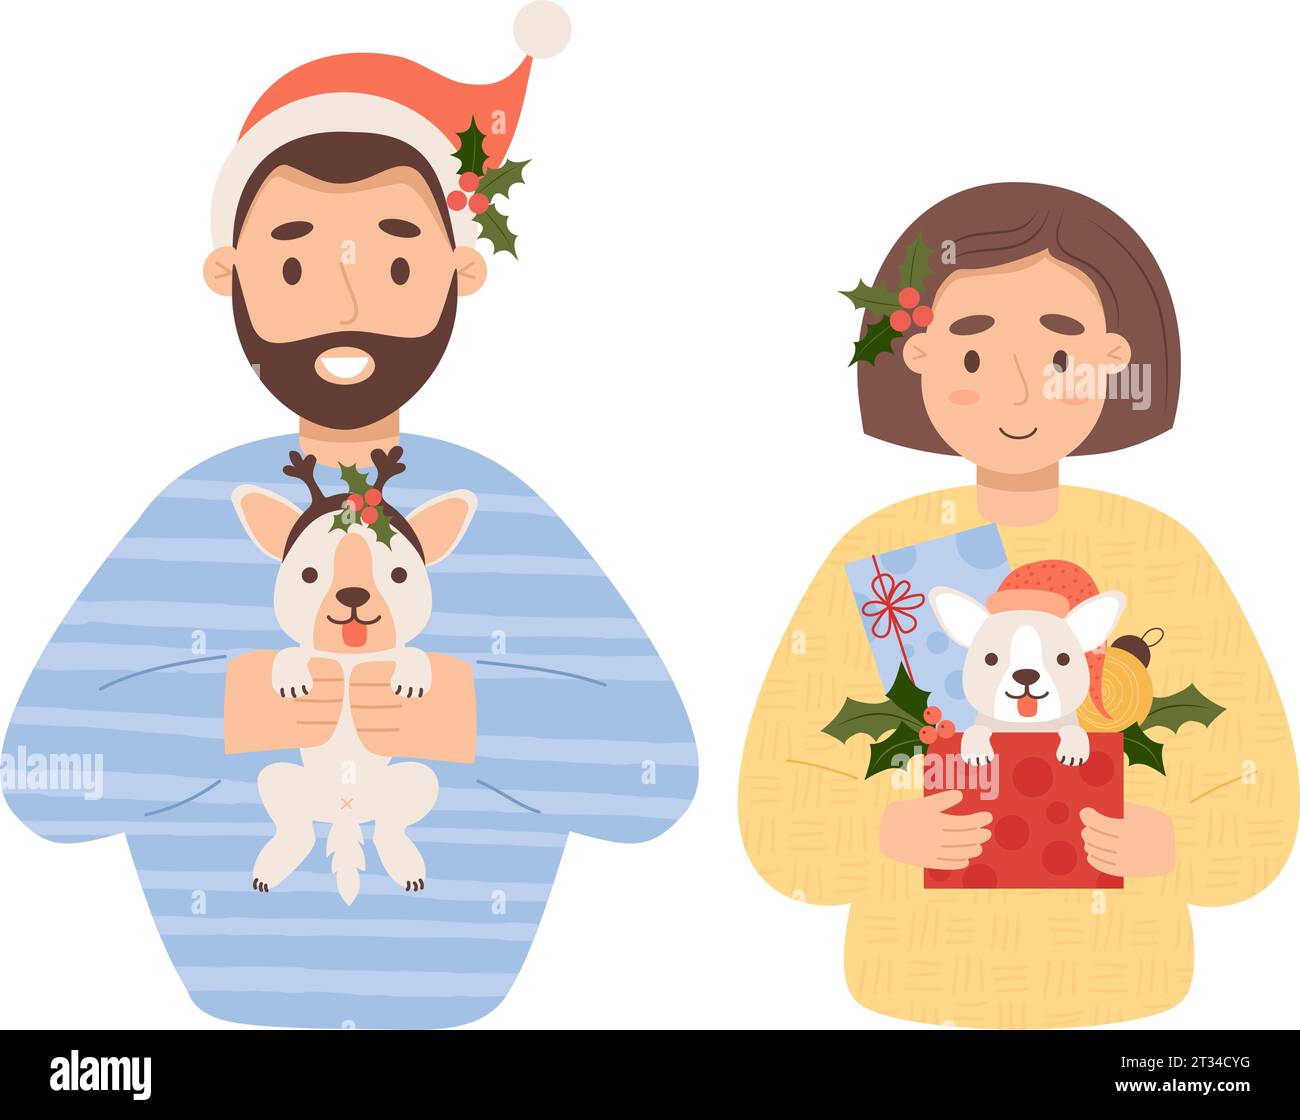 Niedliches Weihnachtsgeschenk. Glückliches Paar Frau und Mann mit einem kleinen Welpen und Neujahrsgeschenken. Vektorillustration im Cartoon-Stil. Isolierter Urlaubscharakter Stock Vektor